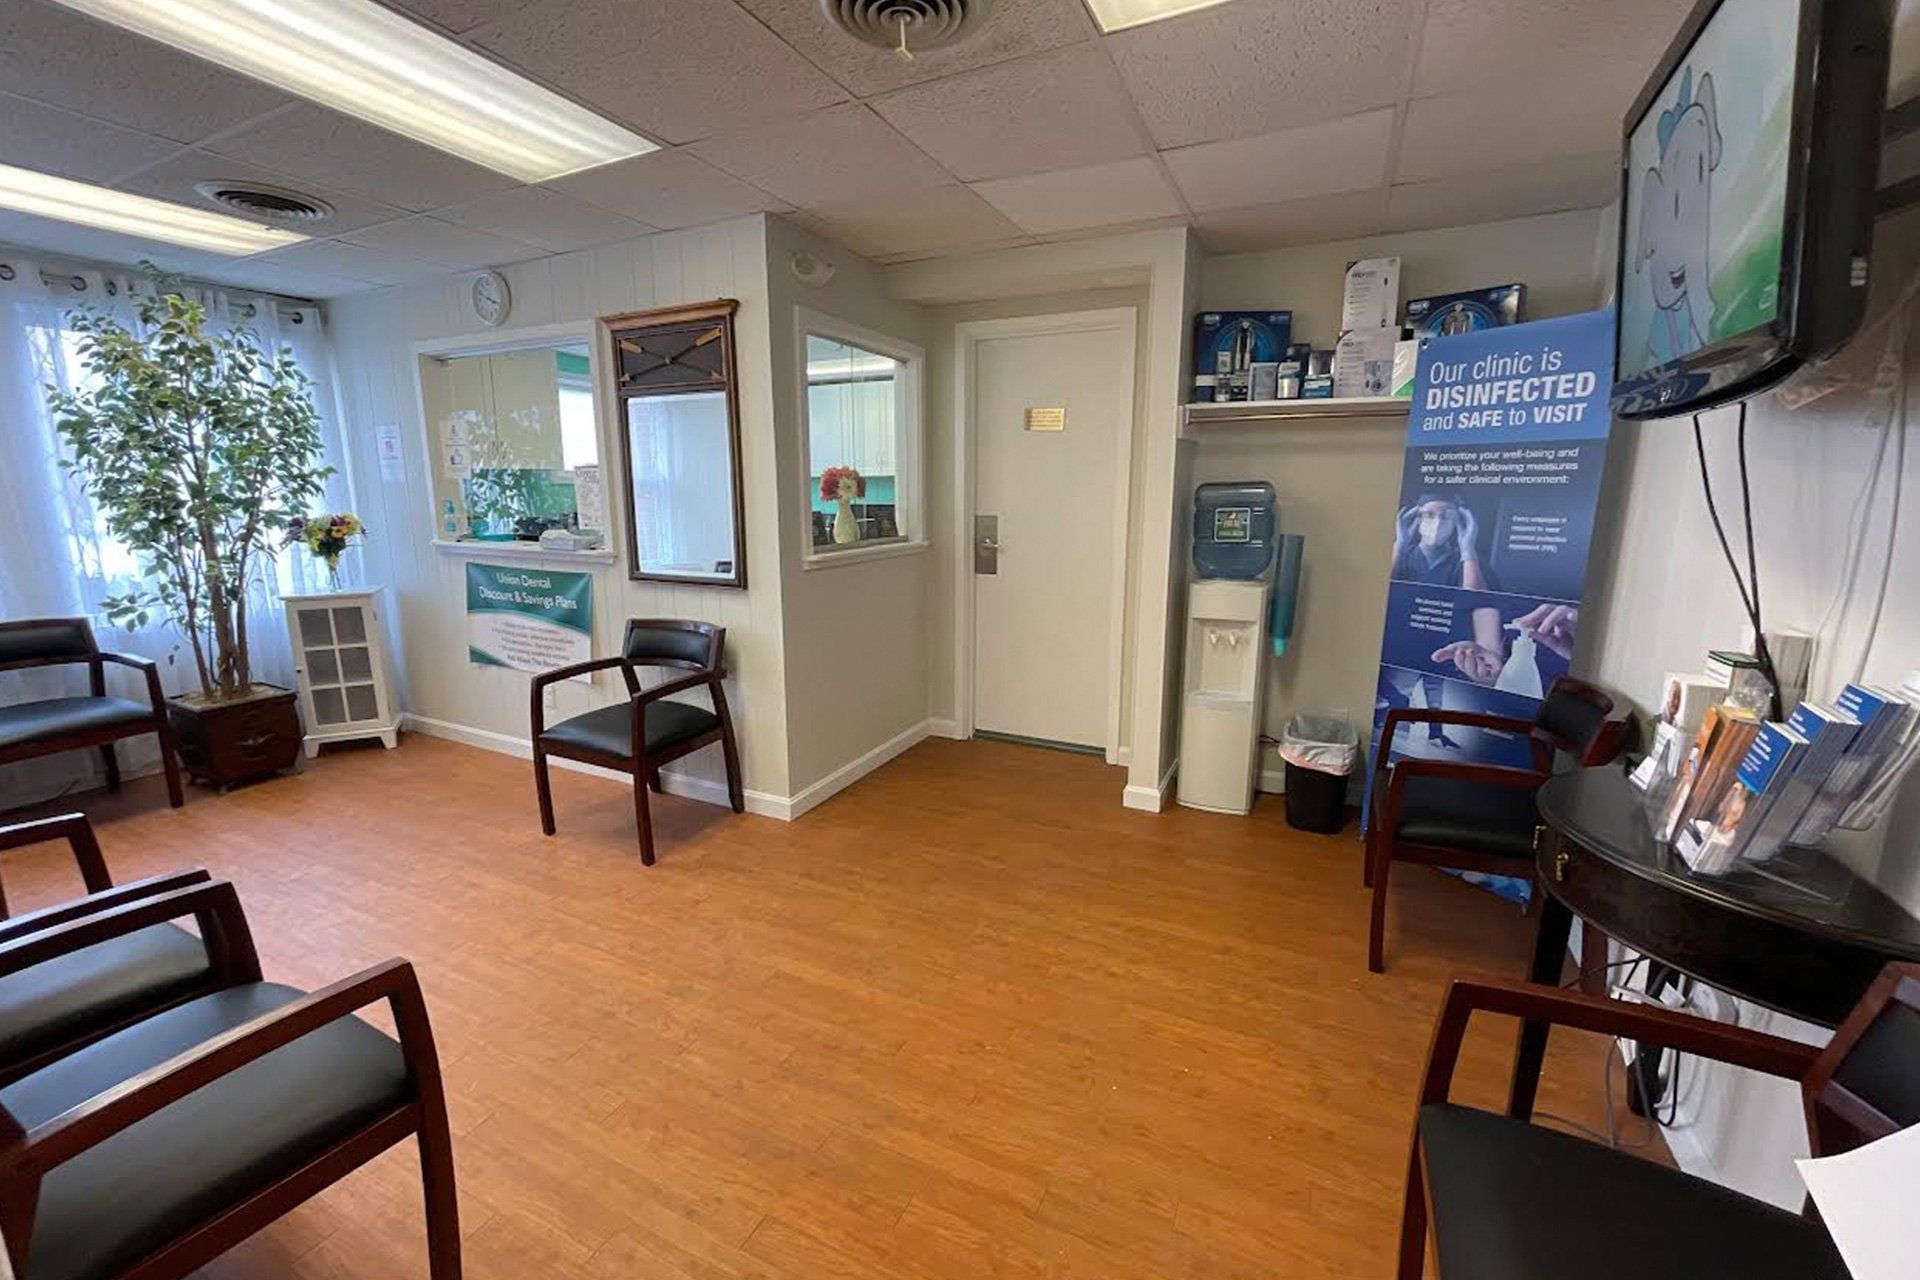 Union Dental Waiting room in Marlborough, MA